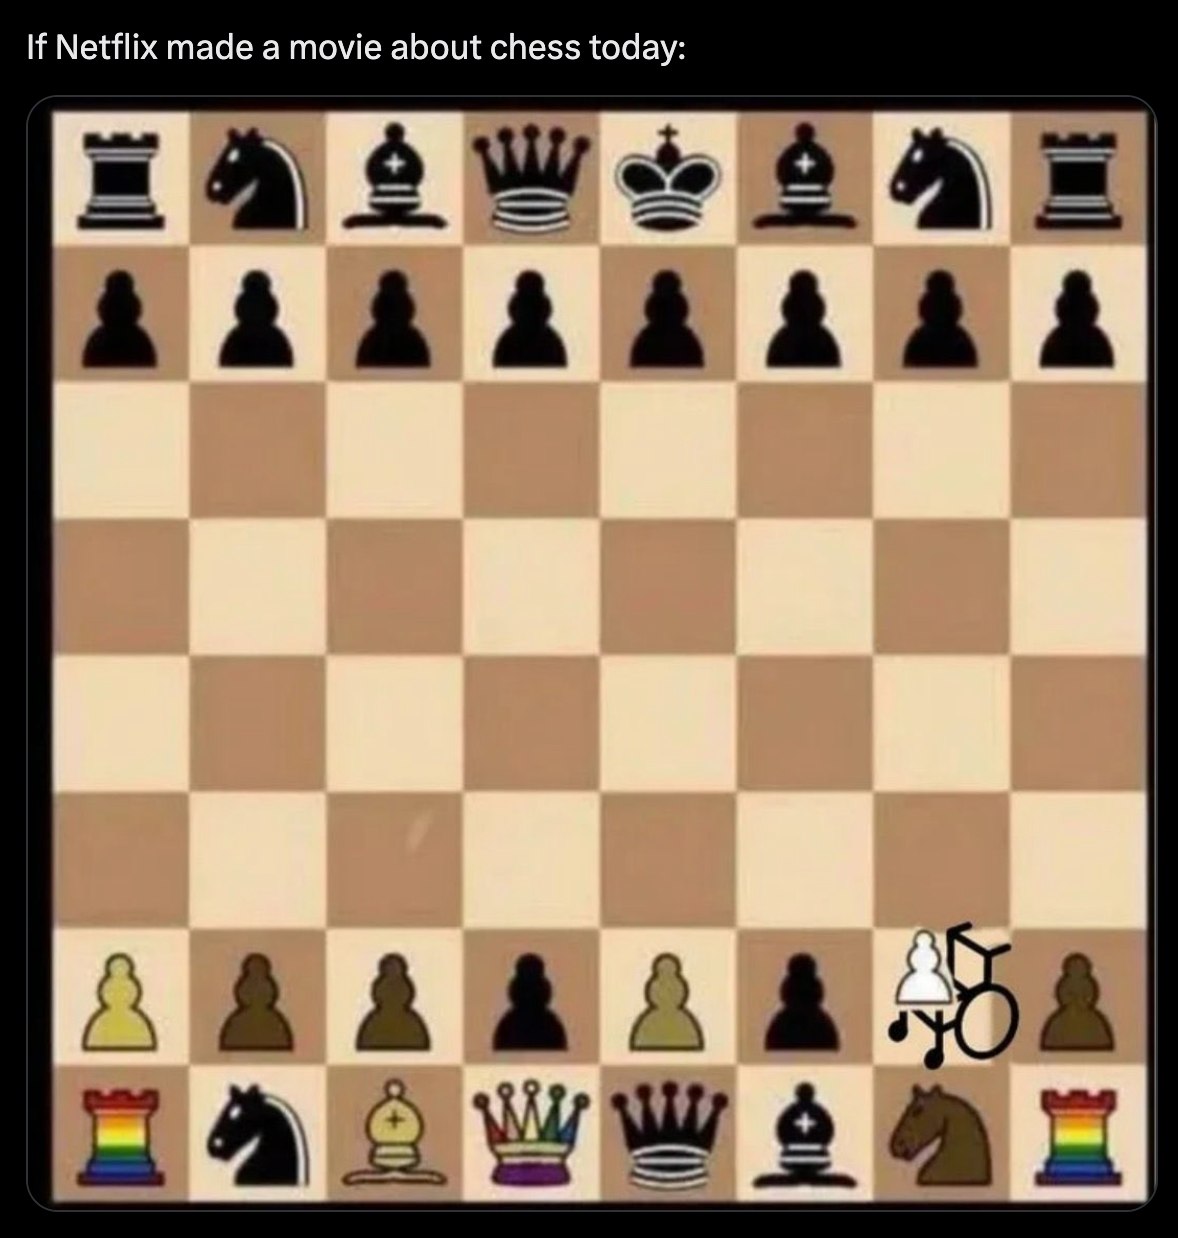 netflix_chess_movie.jpg